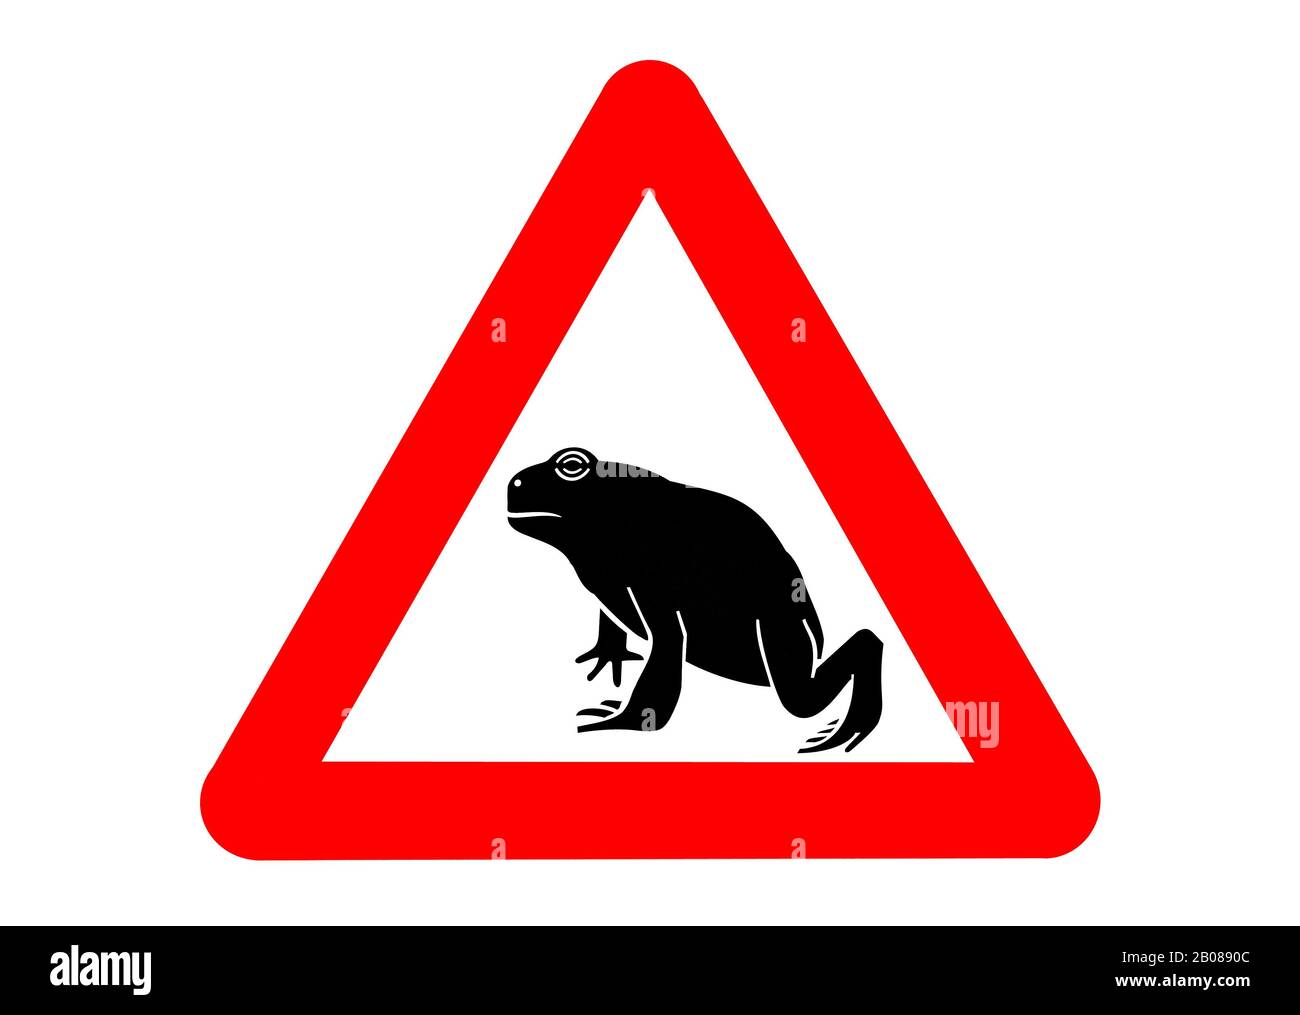 Warnschild für wandernde Amphibien/Kröten, die während der jährlichen Wanderung im Frühjahr die Straße überqueren, vor weißem Hintergrund Stockfoto